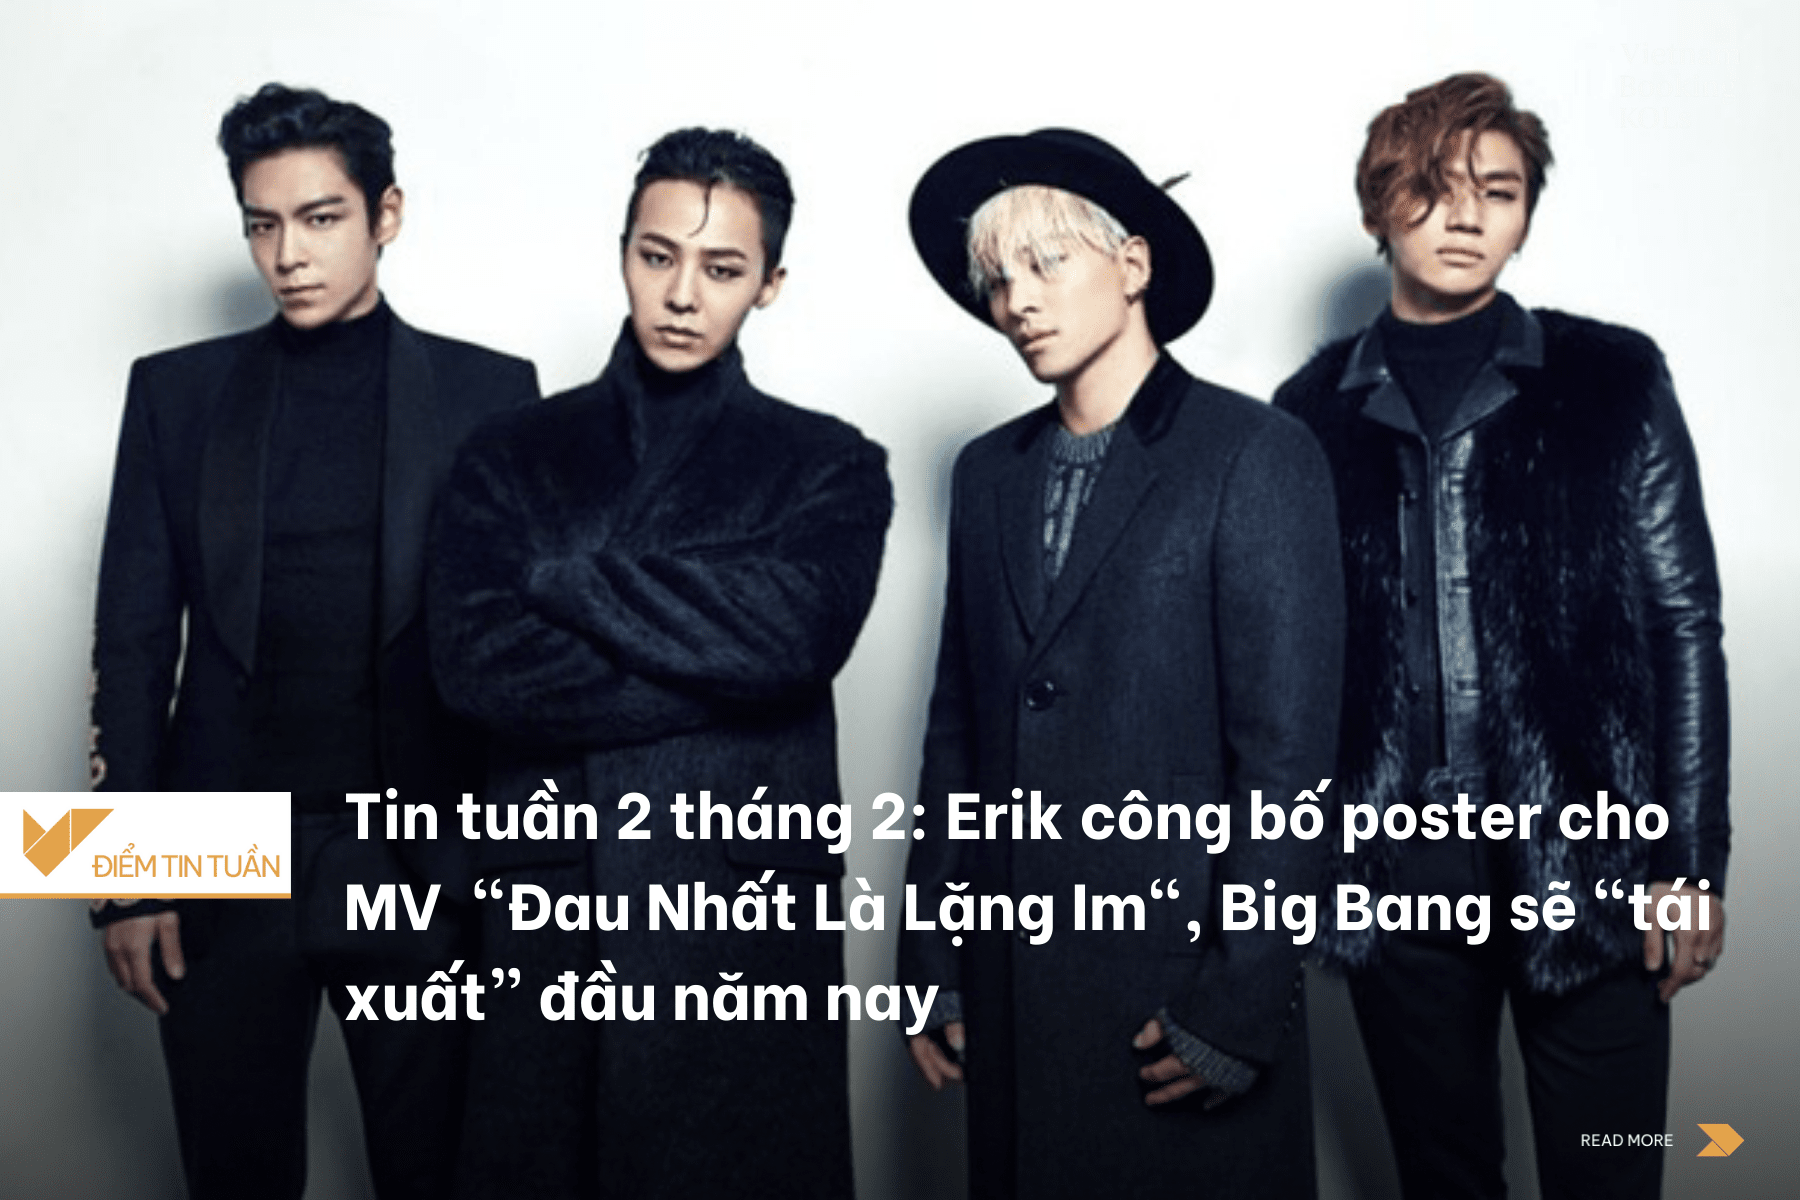 Tin tuần 2 tháng 2: Erik công bố poster cho MV  "Đau Nhất Là Lặng Im", Big Bang sẽ “tái xuất” đầu năm nay